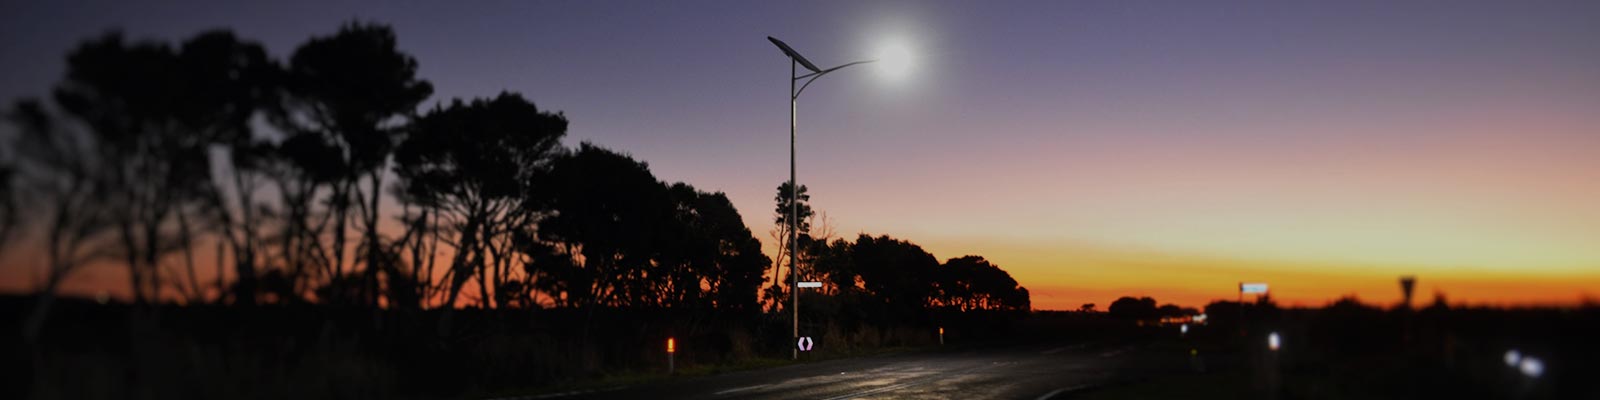 Roadway Solar V-LED Light